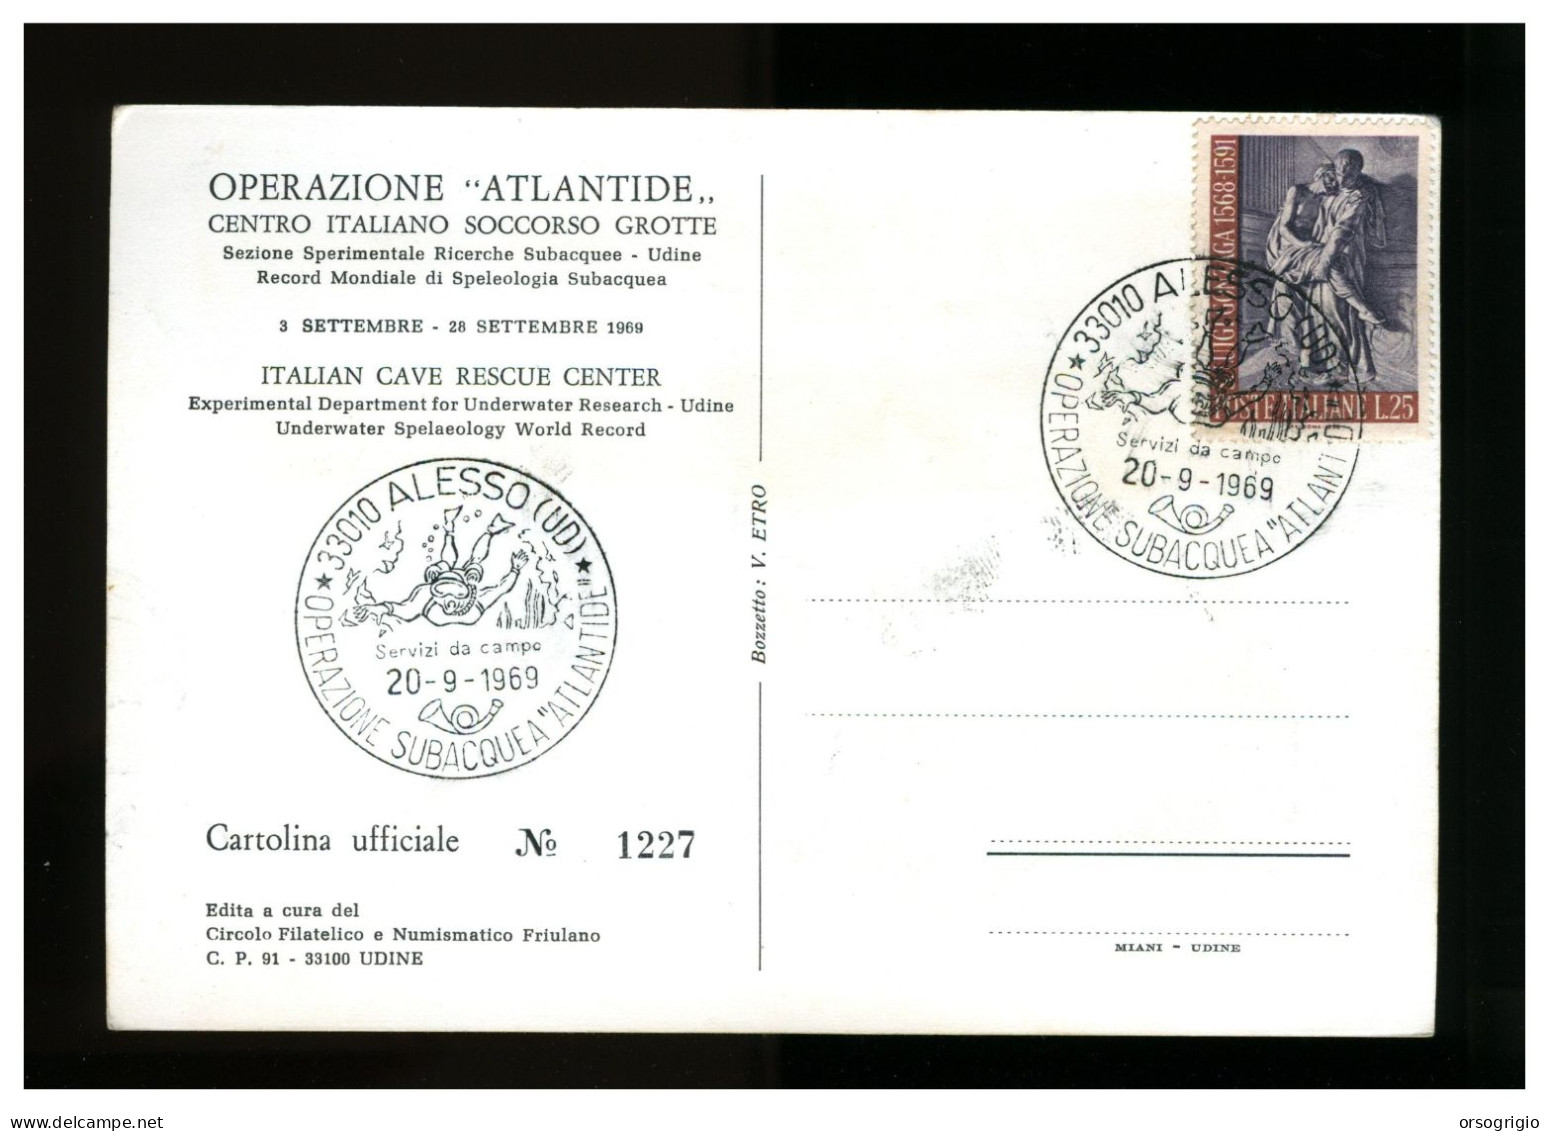 ITALIA - OPERAZIONE ATLANTIDE 1969 - CAVE RESCUE - ALESSO - Città Subacquea - Plongée